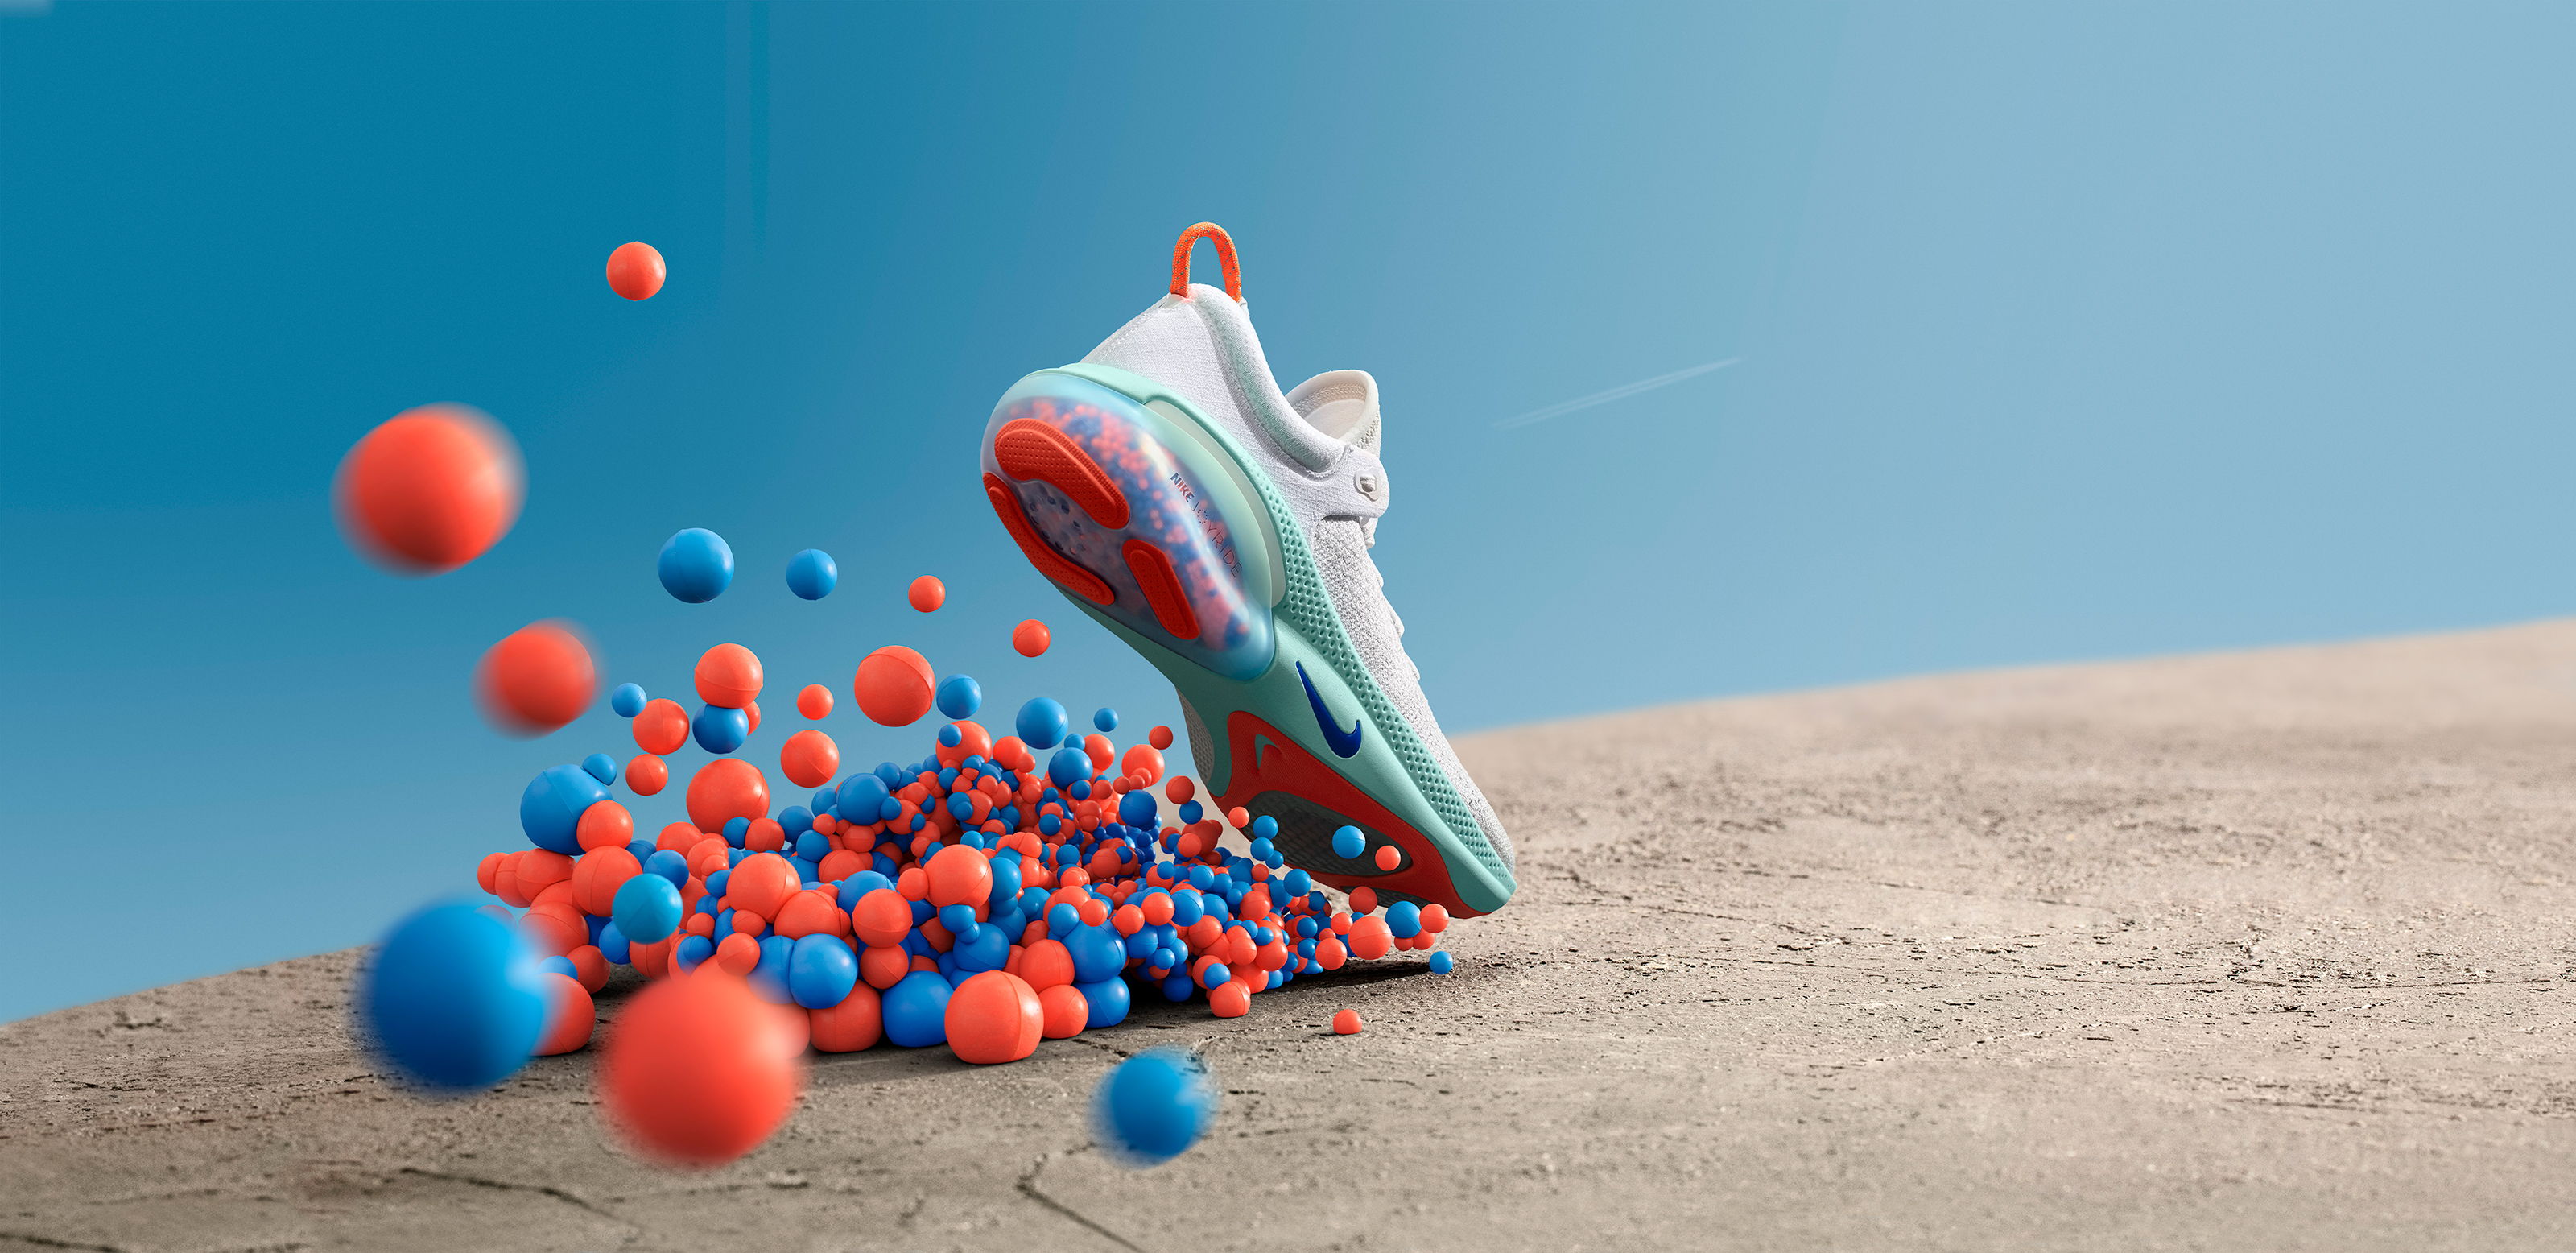 Nike Joyride: nieuwste innovatie van Nike geeft het gevoel alsof je op bubbels loopt